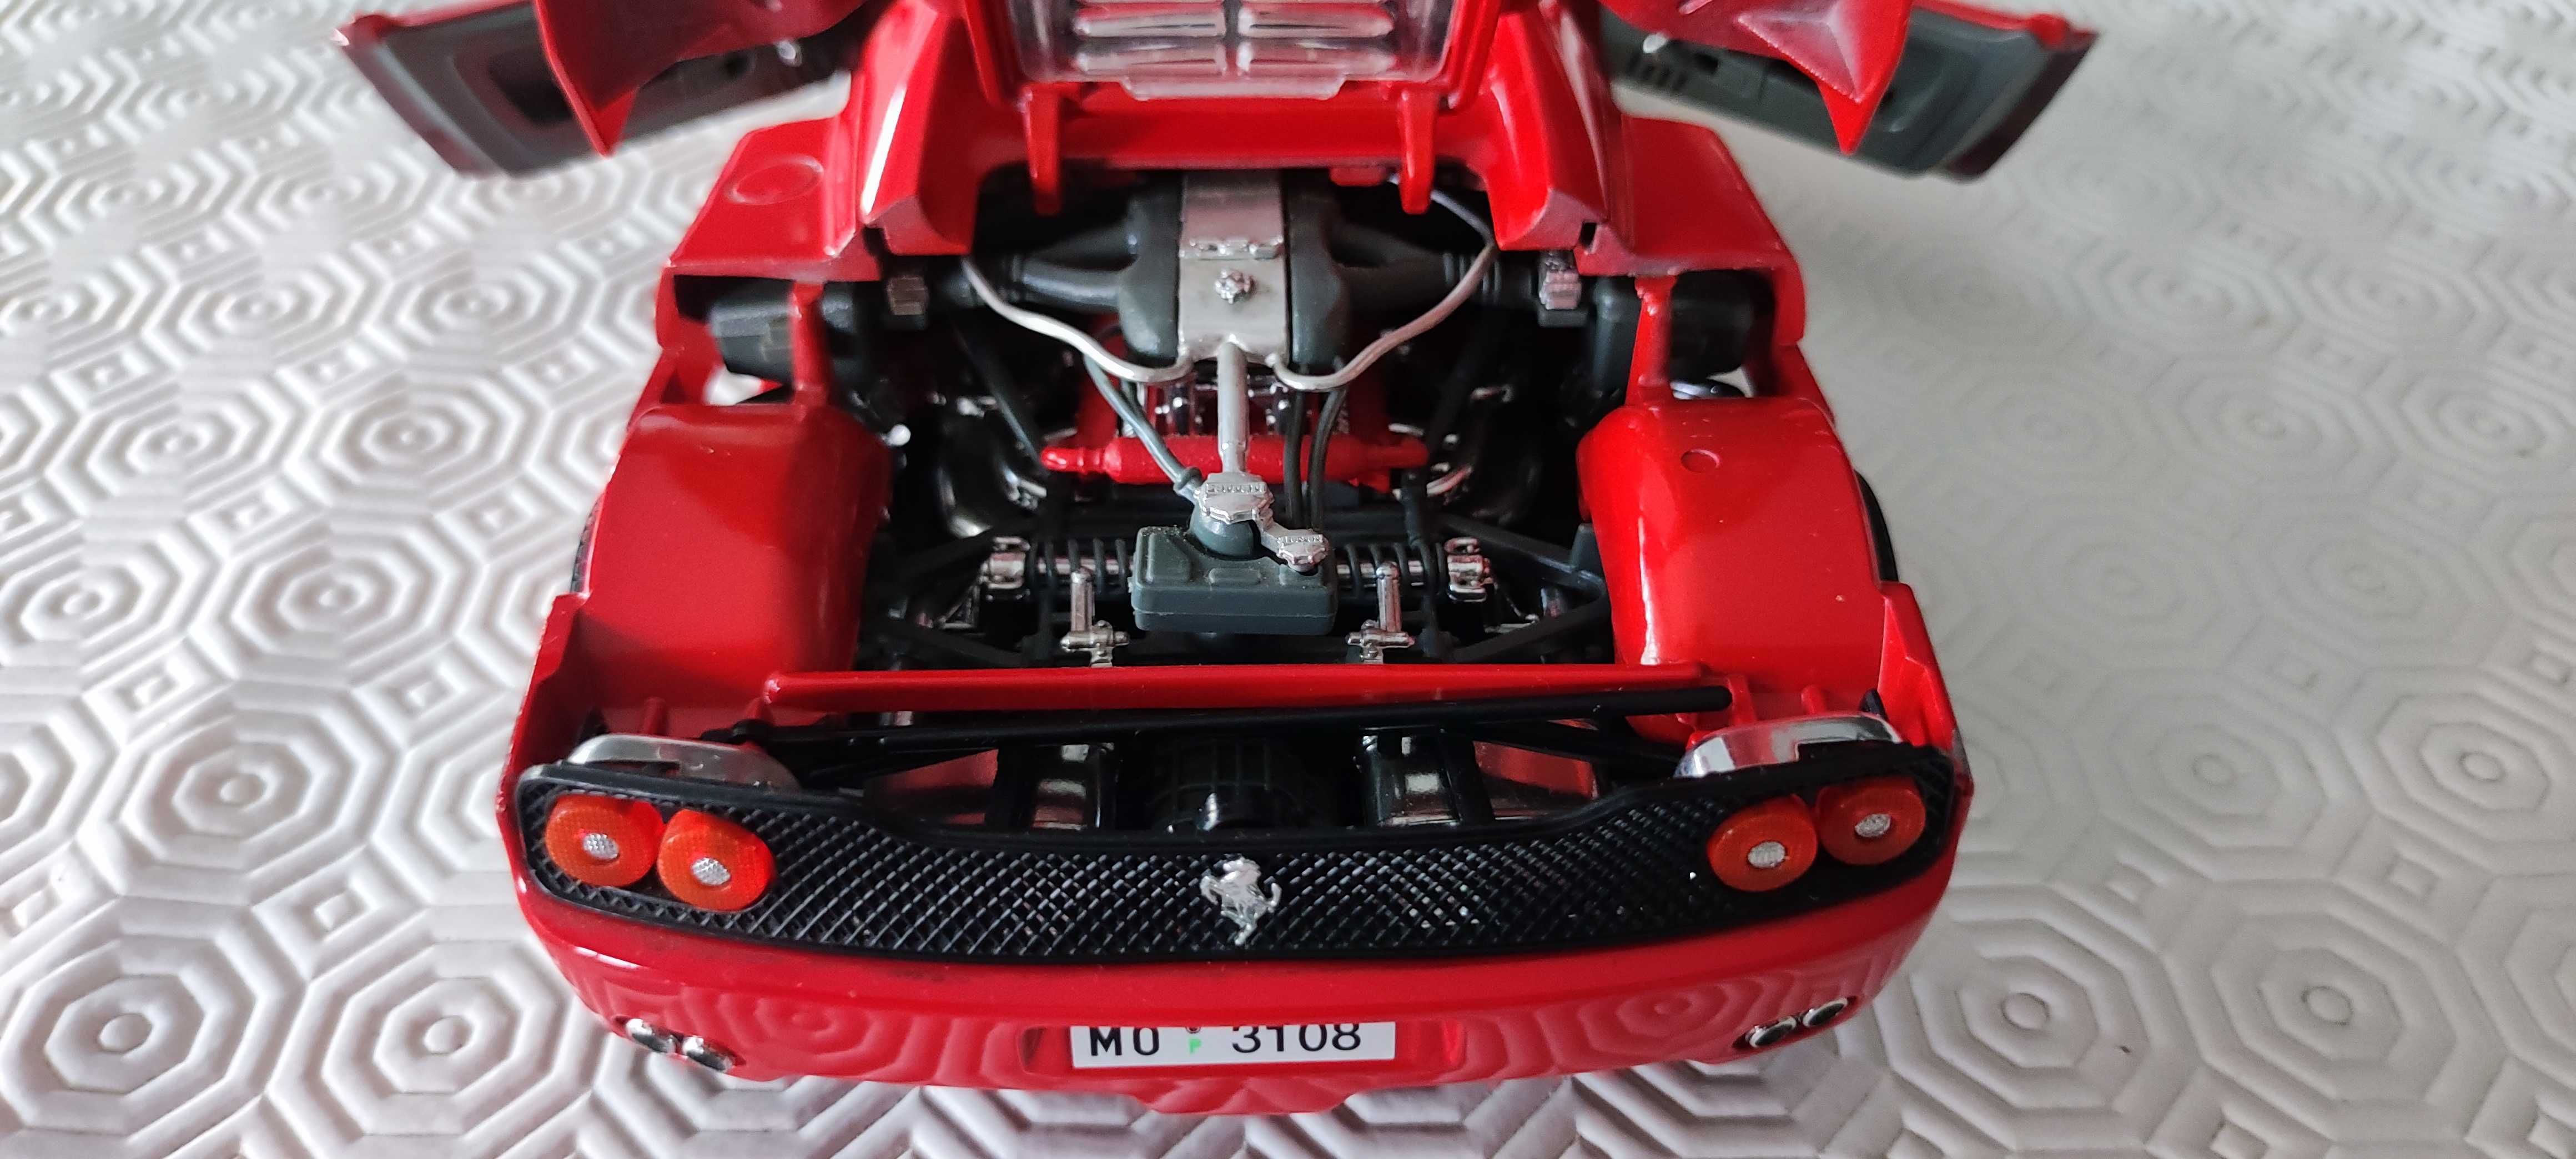 Ferrari F50 em Metal Bburago 1/18